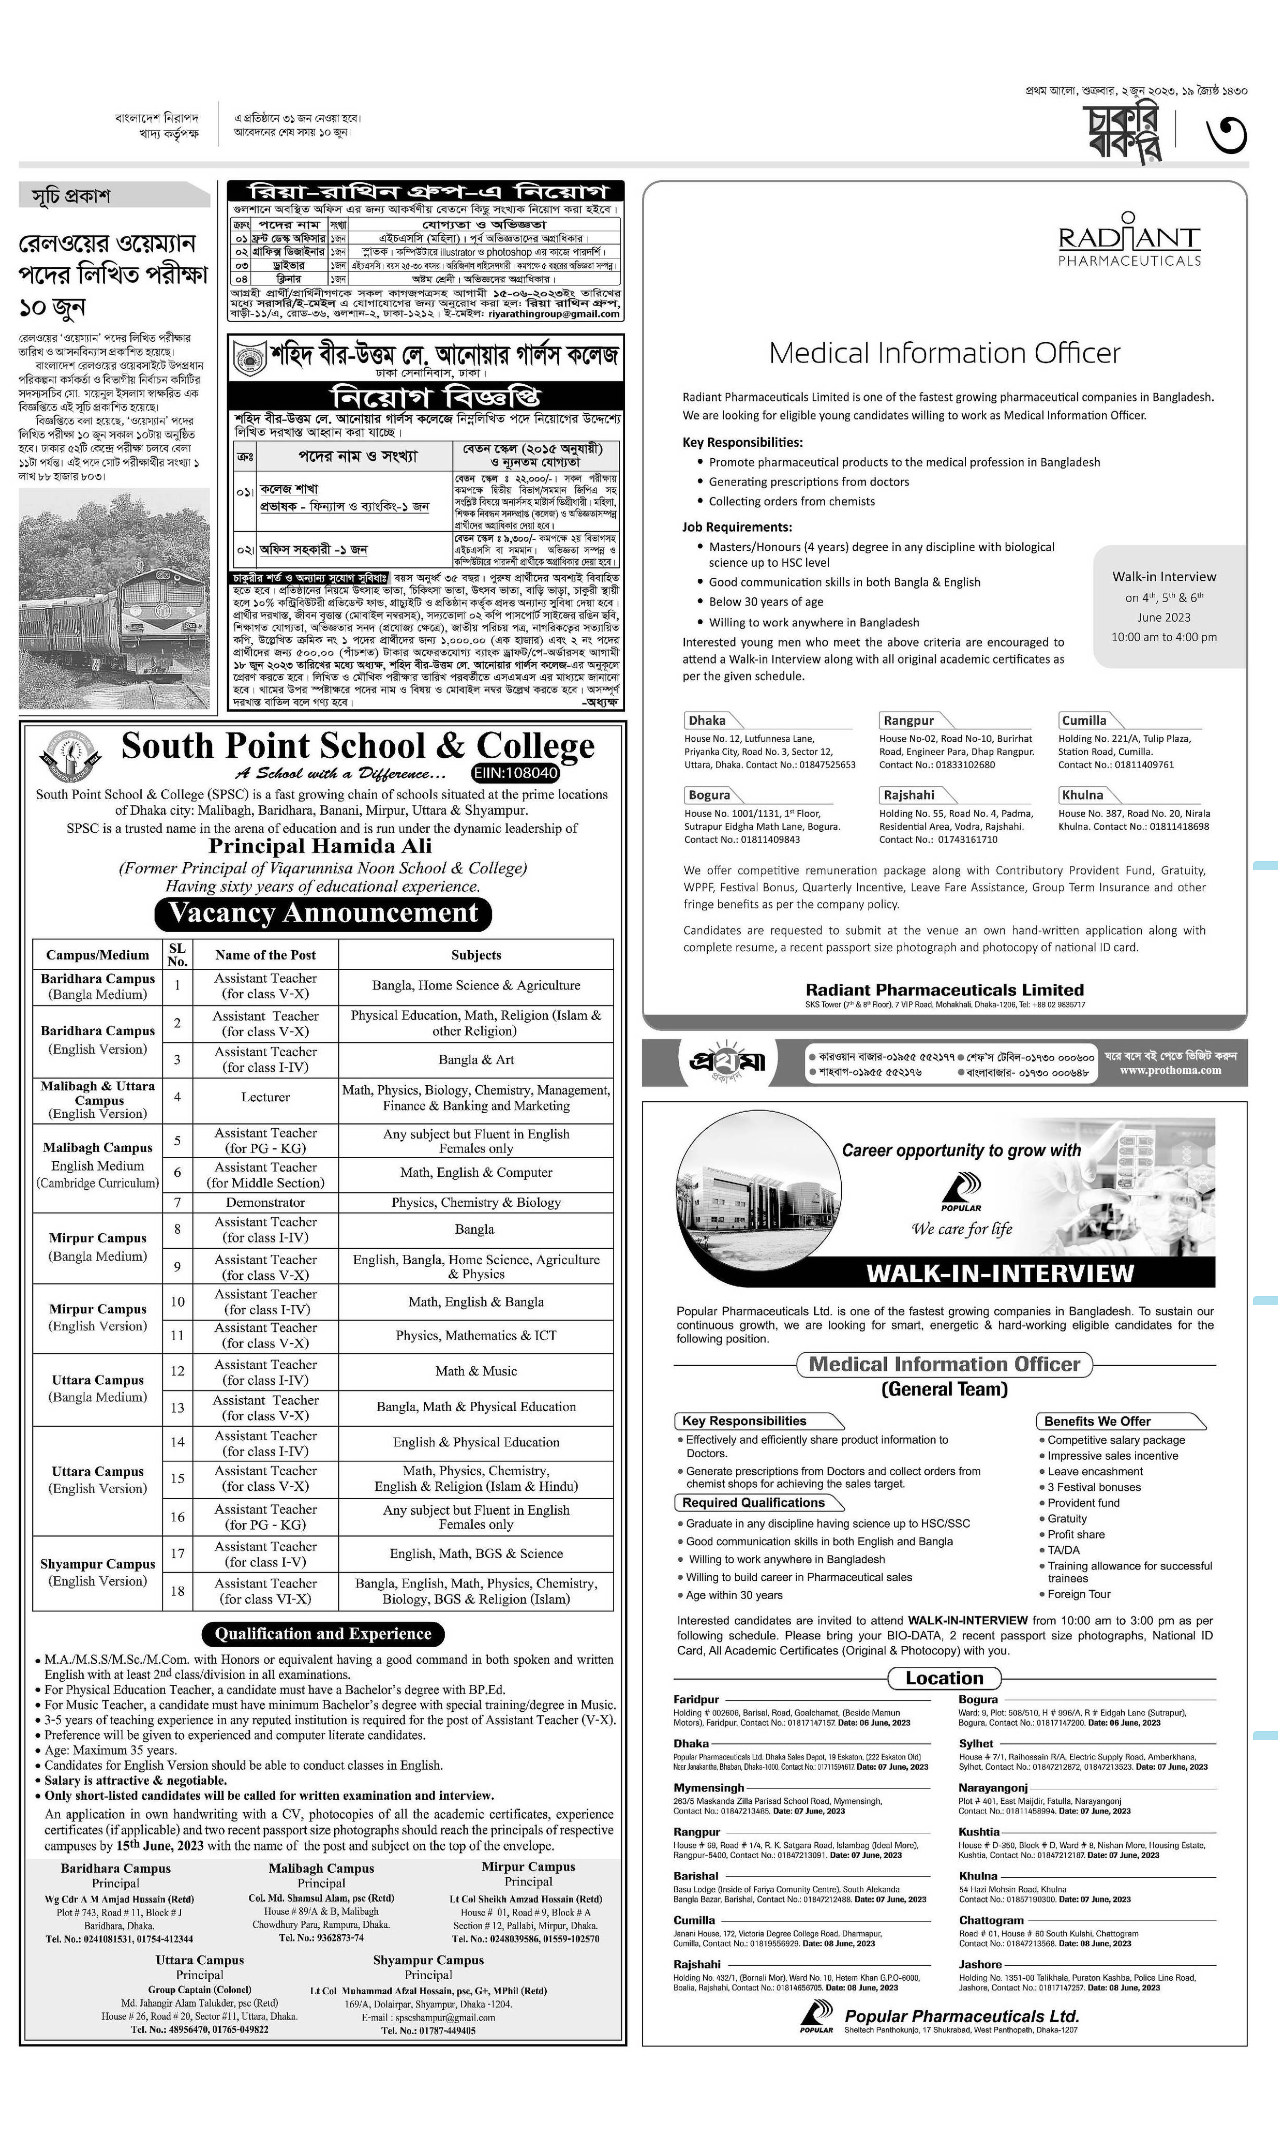 প্রথম আলো চাকরির খবর চাকরির বাকরি ০২ জুন ২০২৩ - Prothom Alo Job Circular Chakri Bakri 02 June 2023 - প্রথম আলো চাকরির খবর ০২ জুন ২০২৩ - প্রথম আলো চাকরি বাকরি ০২ জুন ২০২৩ - Prothom Alo Job Circular 02 June 2023 - Prothom Alo Chakri Bakri 02 Jun 2023 - প্রথম আলো পত্রিকা আজকের খবর ২০২৩